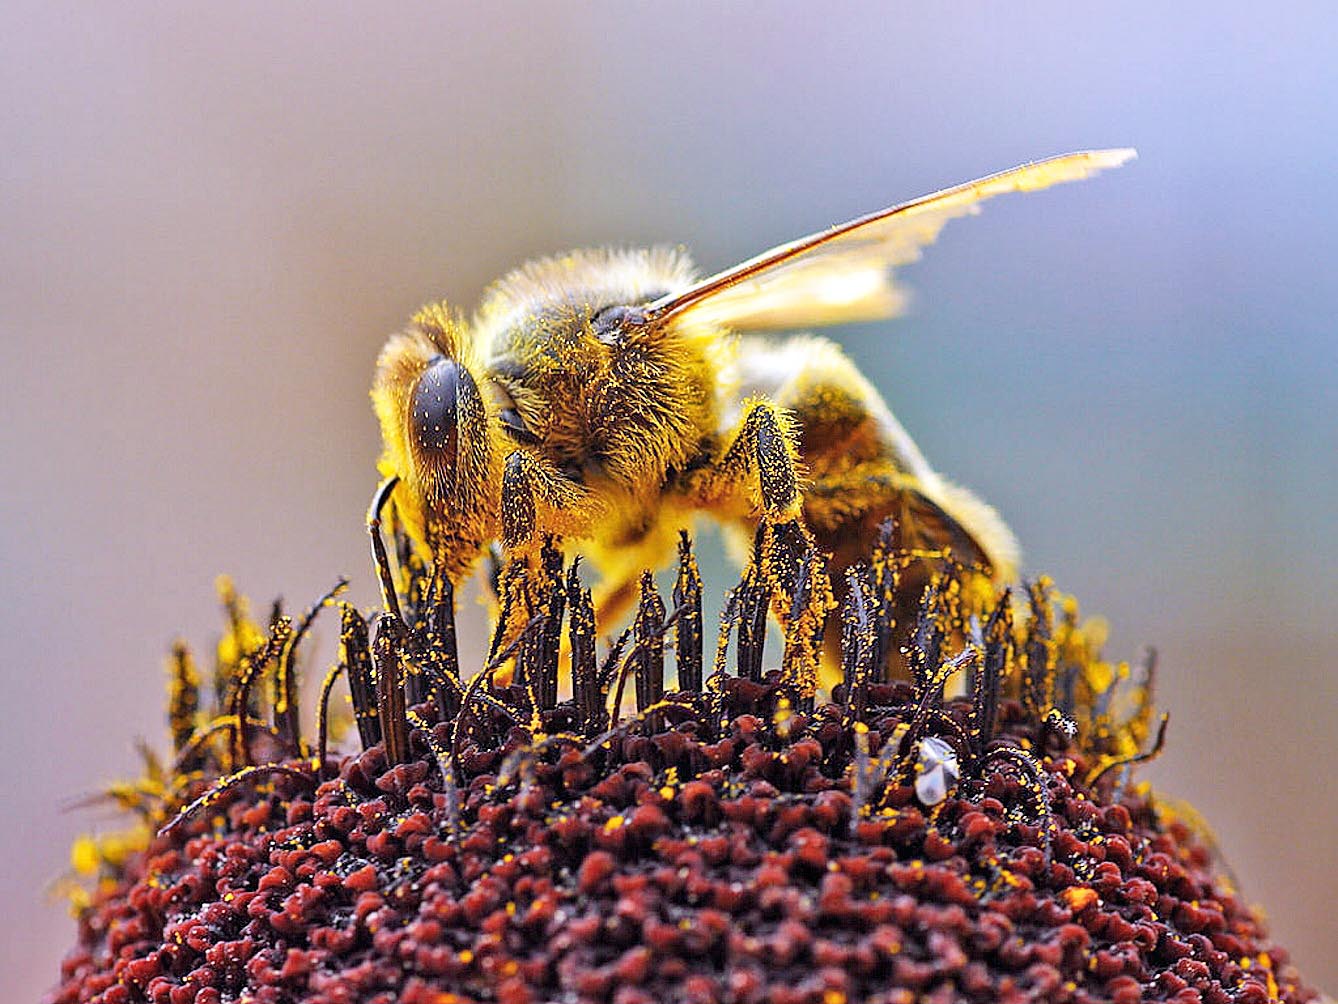 Мета ферми — створення циклу, який дає змогу підтримувати життя бджіл протягом року. Фото з сайту lekciya.com.ua